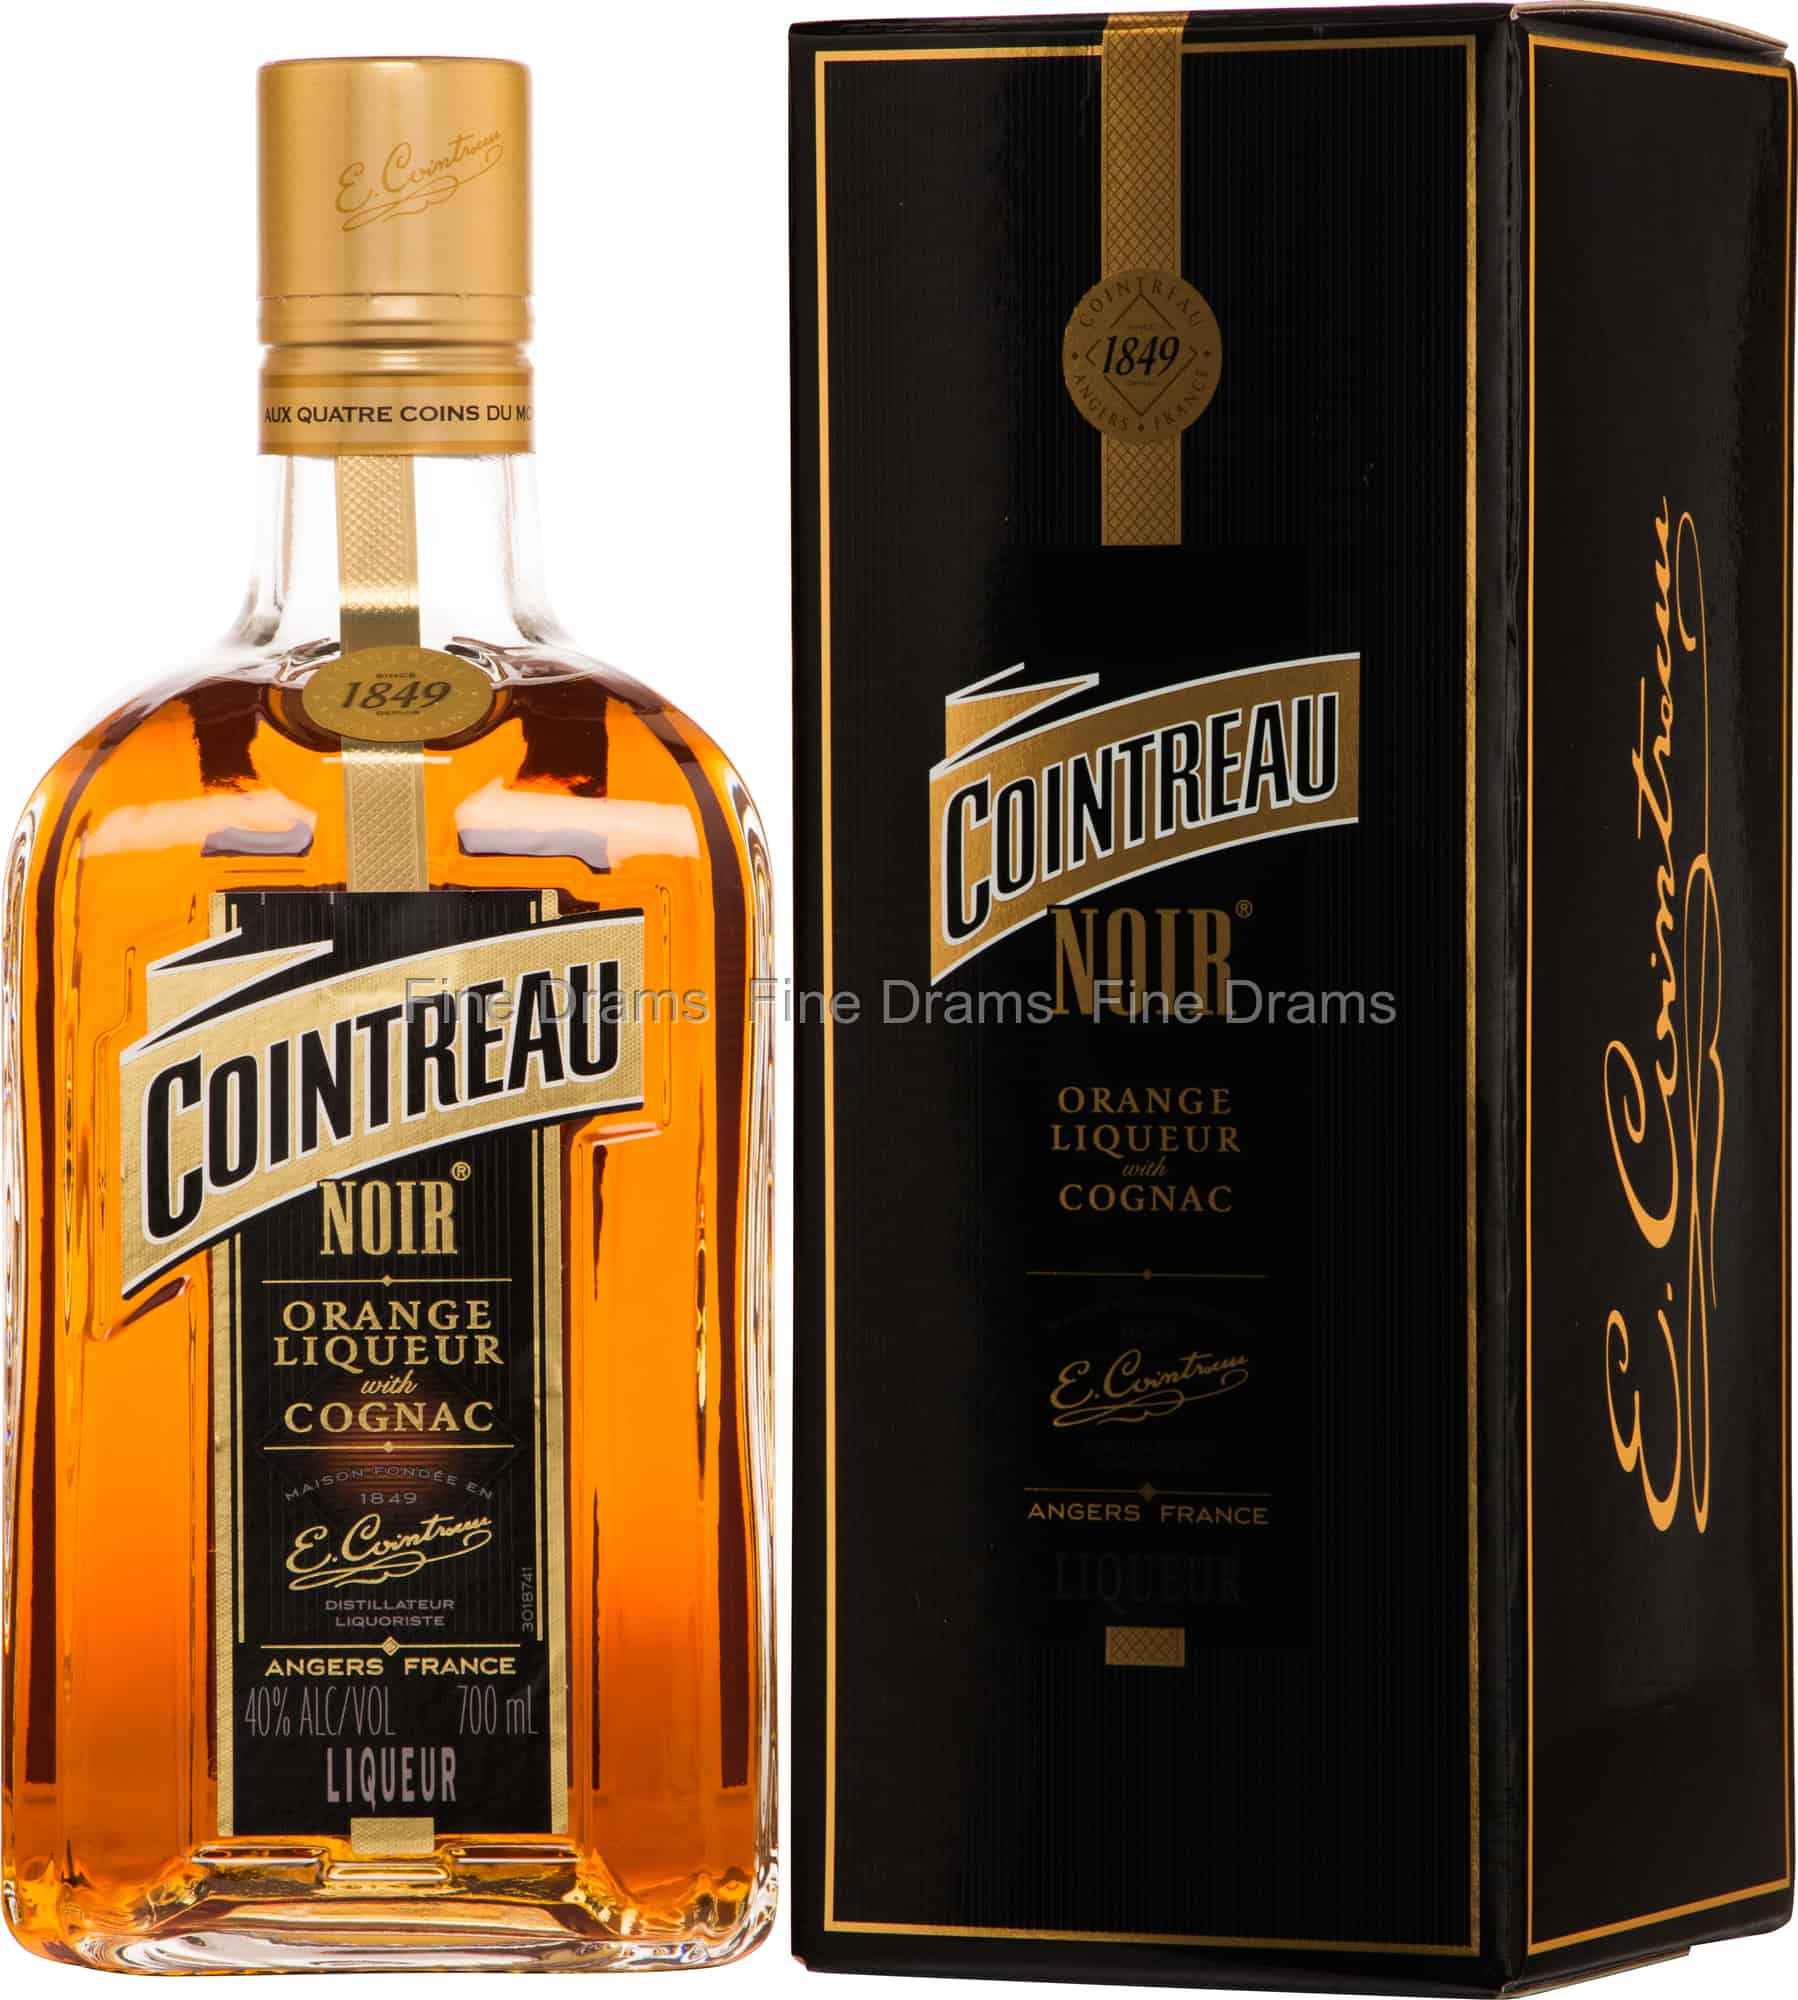 Cointreau Noir - Orange Liqueur with Cognac